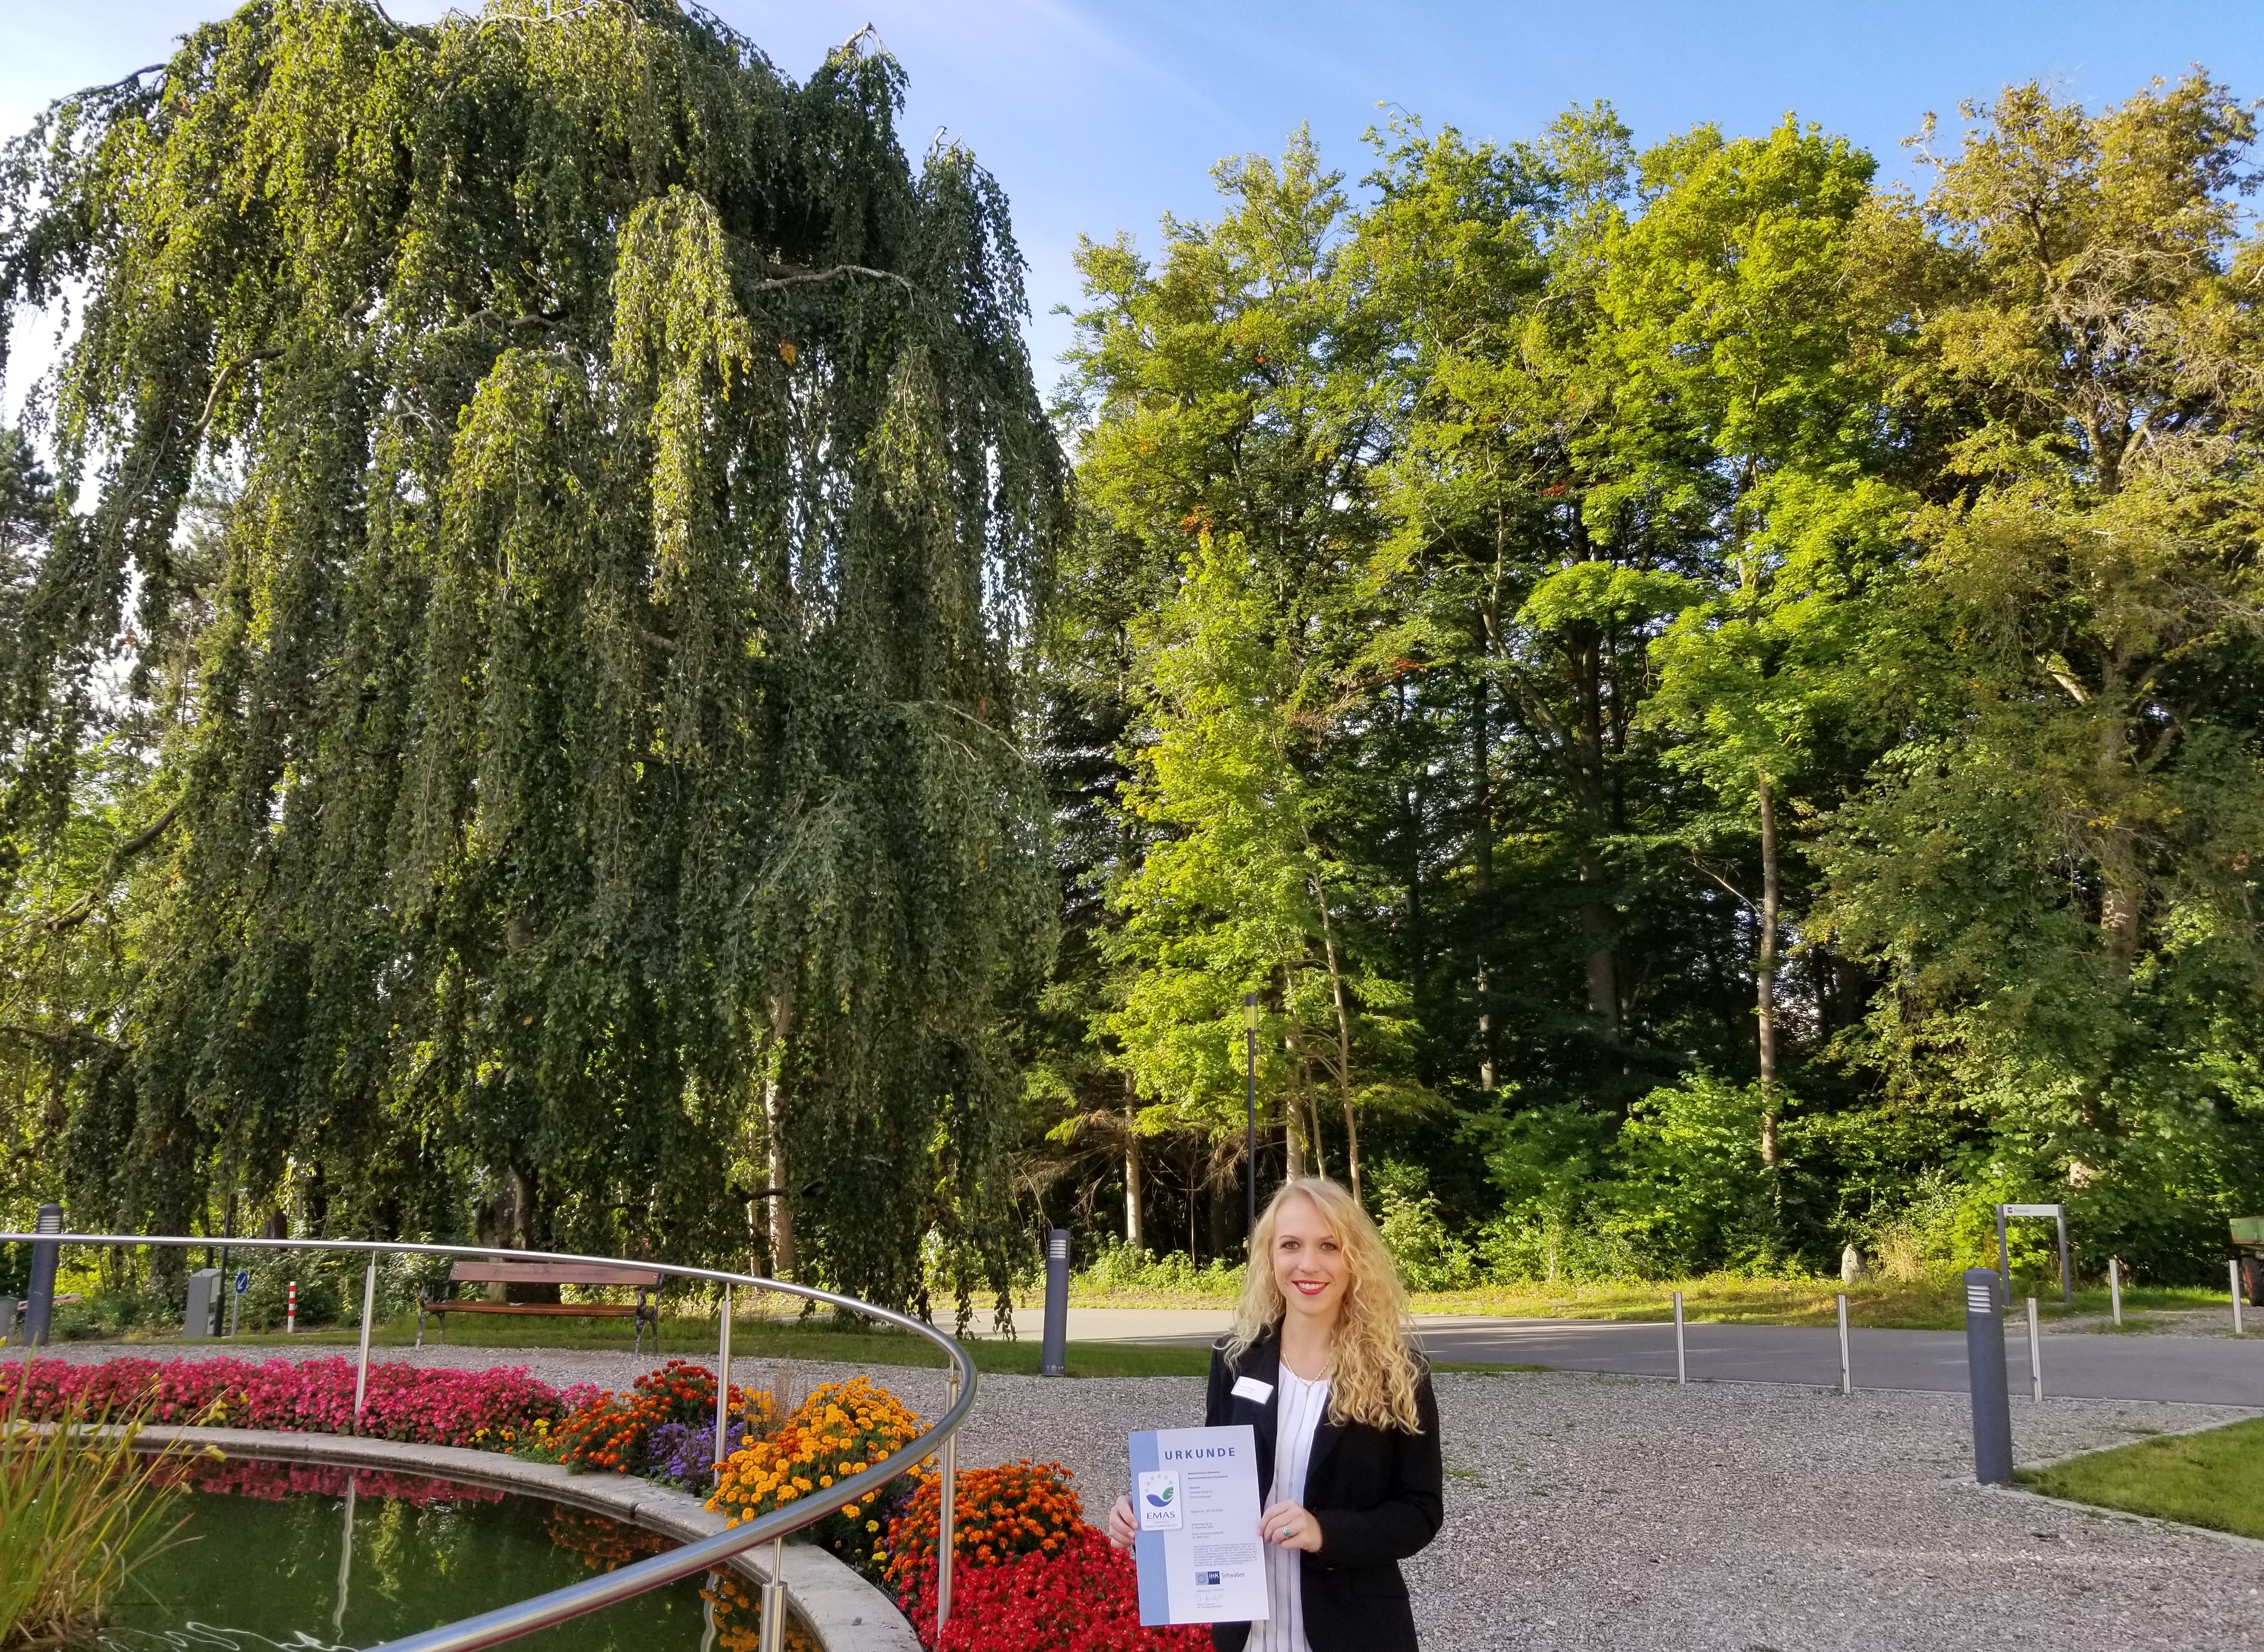 Manuela Kohler, Assistentin der Regionalleitung Süd und Umweltmanagementbeauftragte am BKH Kaufbeuren, freut sich inmitten von grünen Bäumen und bunten Blumen am Springbrunnen über die EMAS-Urkunde.